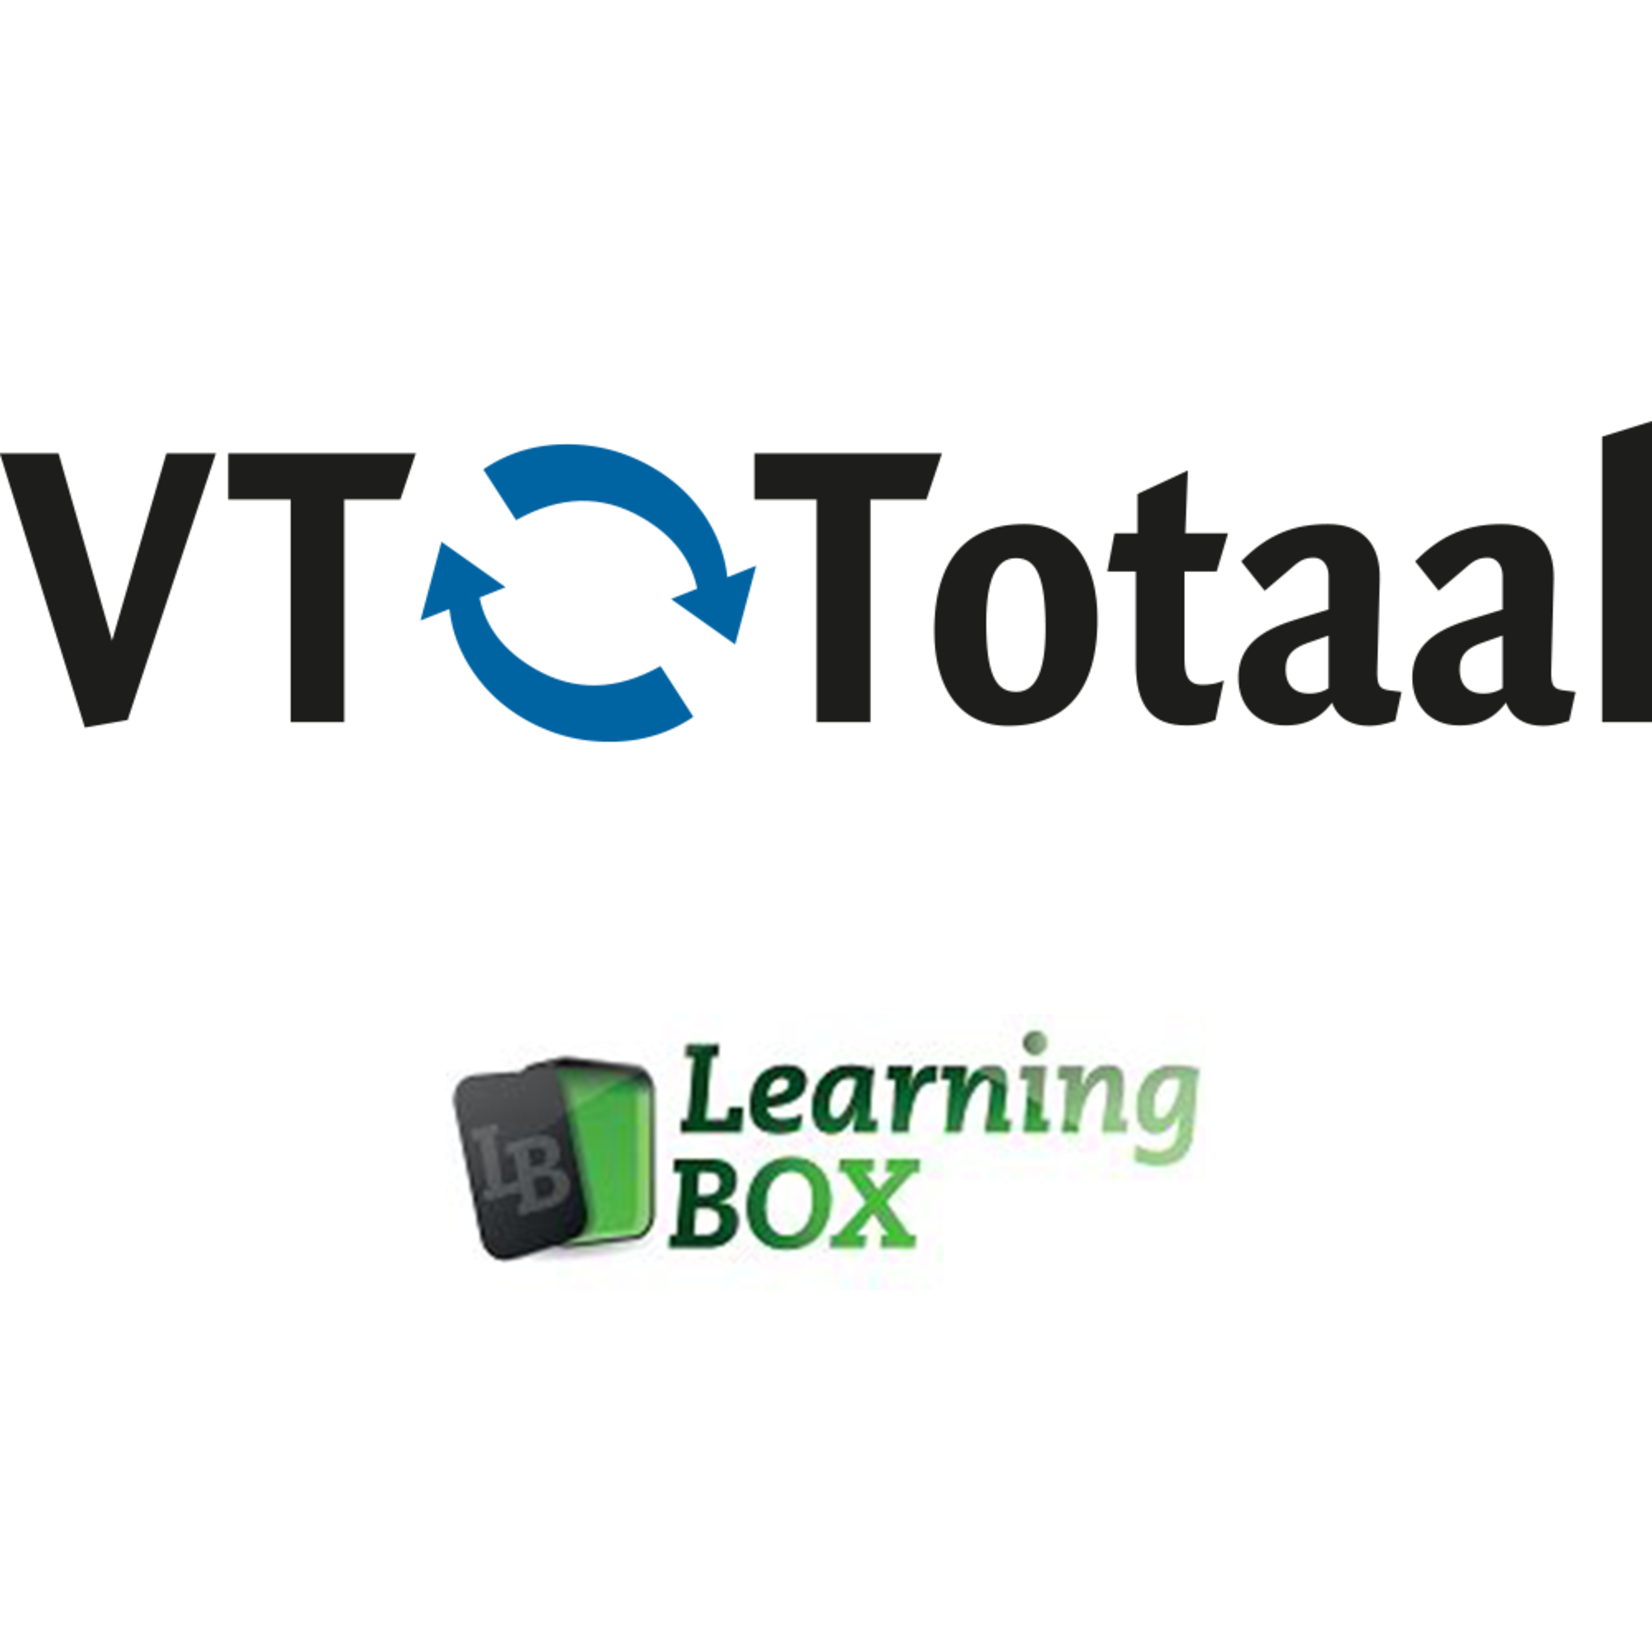 Licentie LearningBOX - VT-Totaal 6 maanden